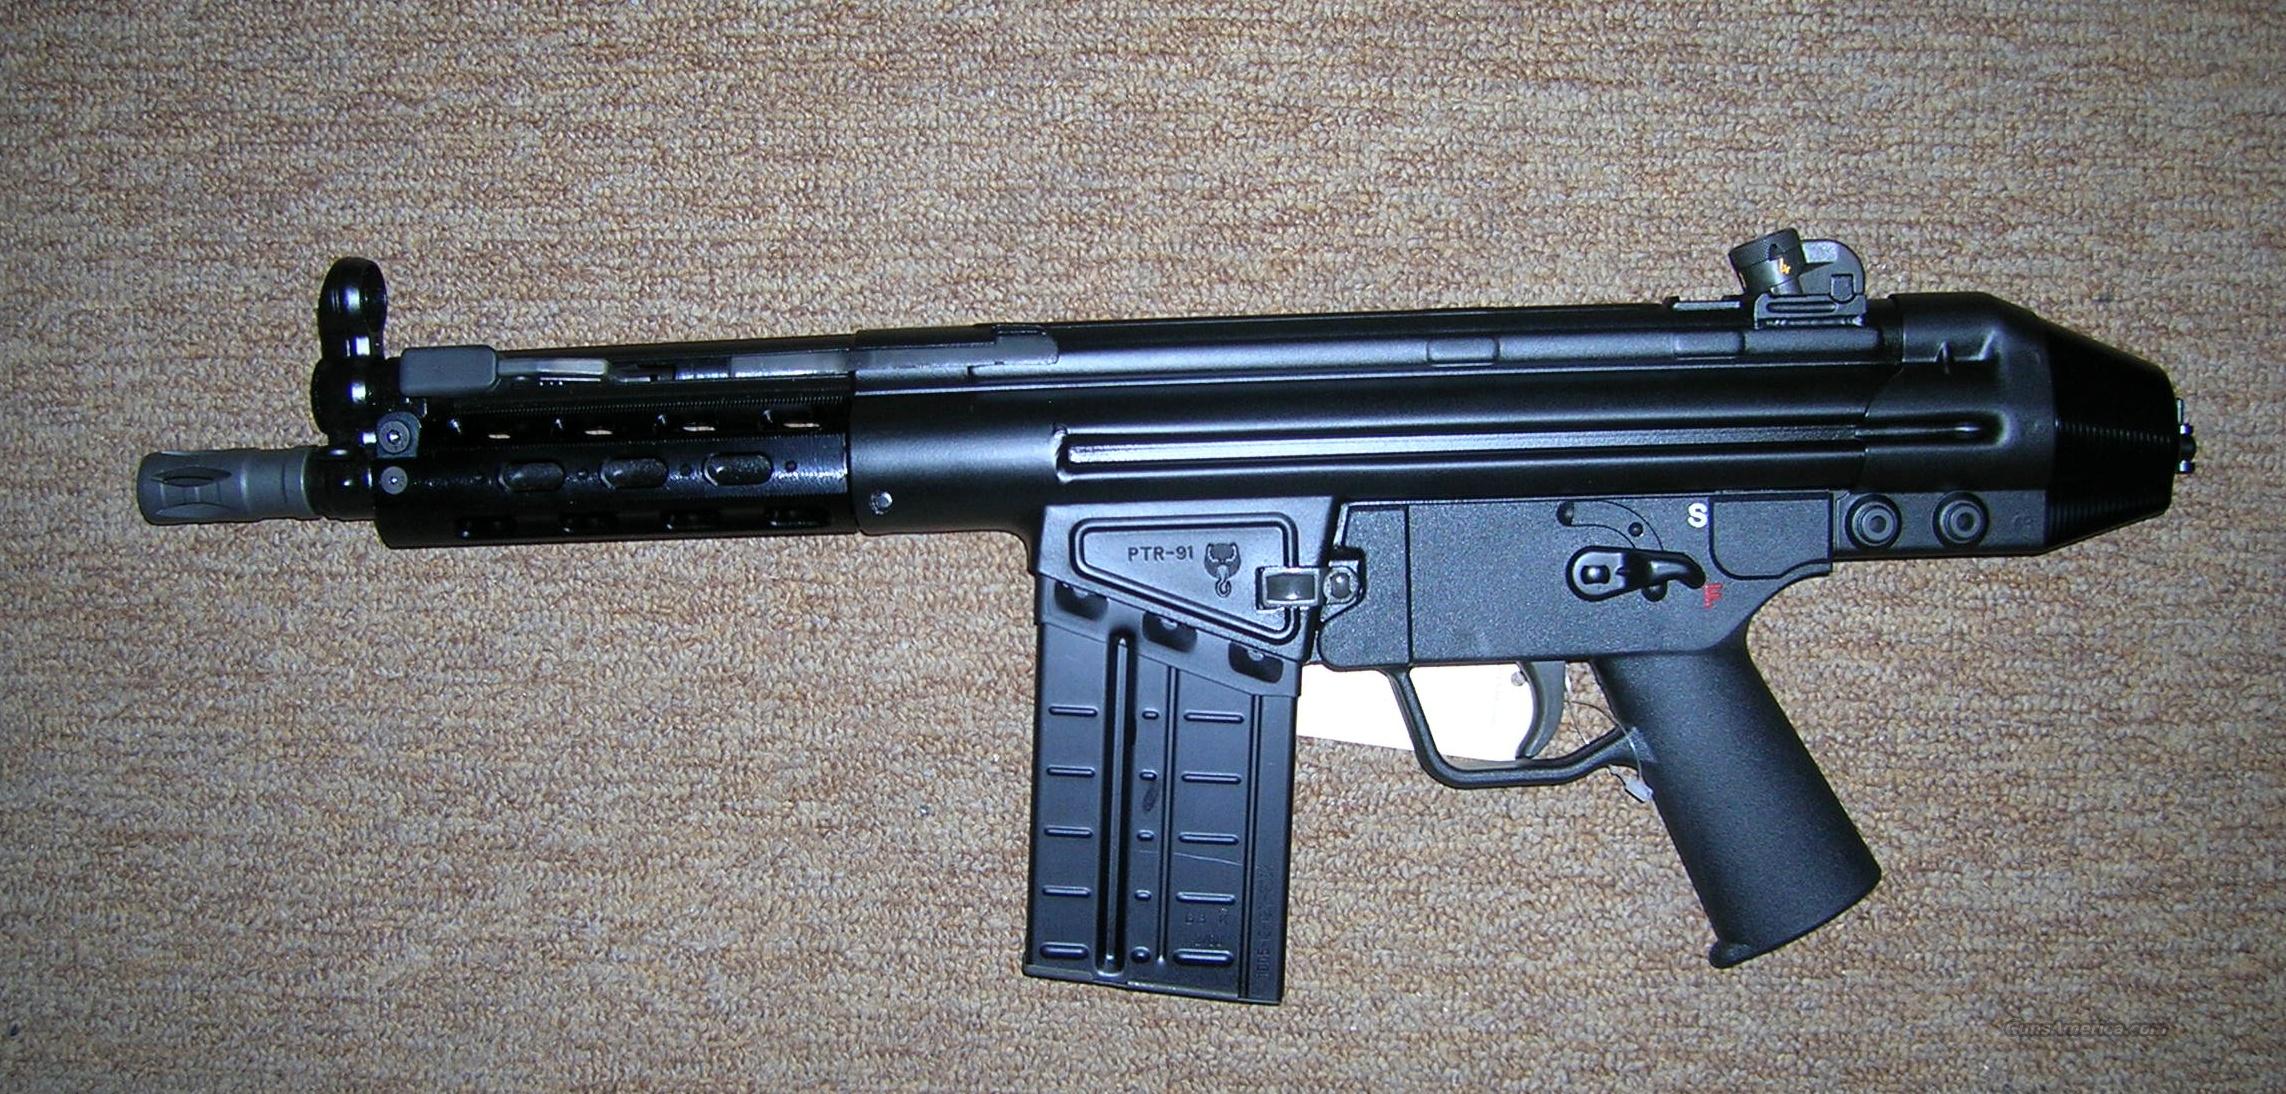 hk 308 pistol